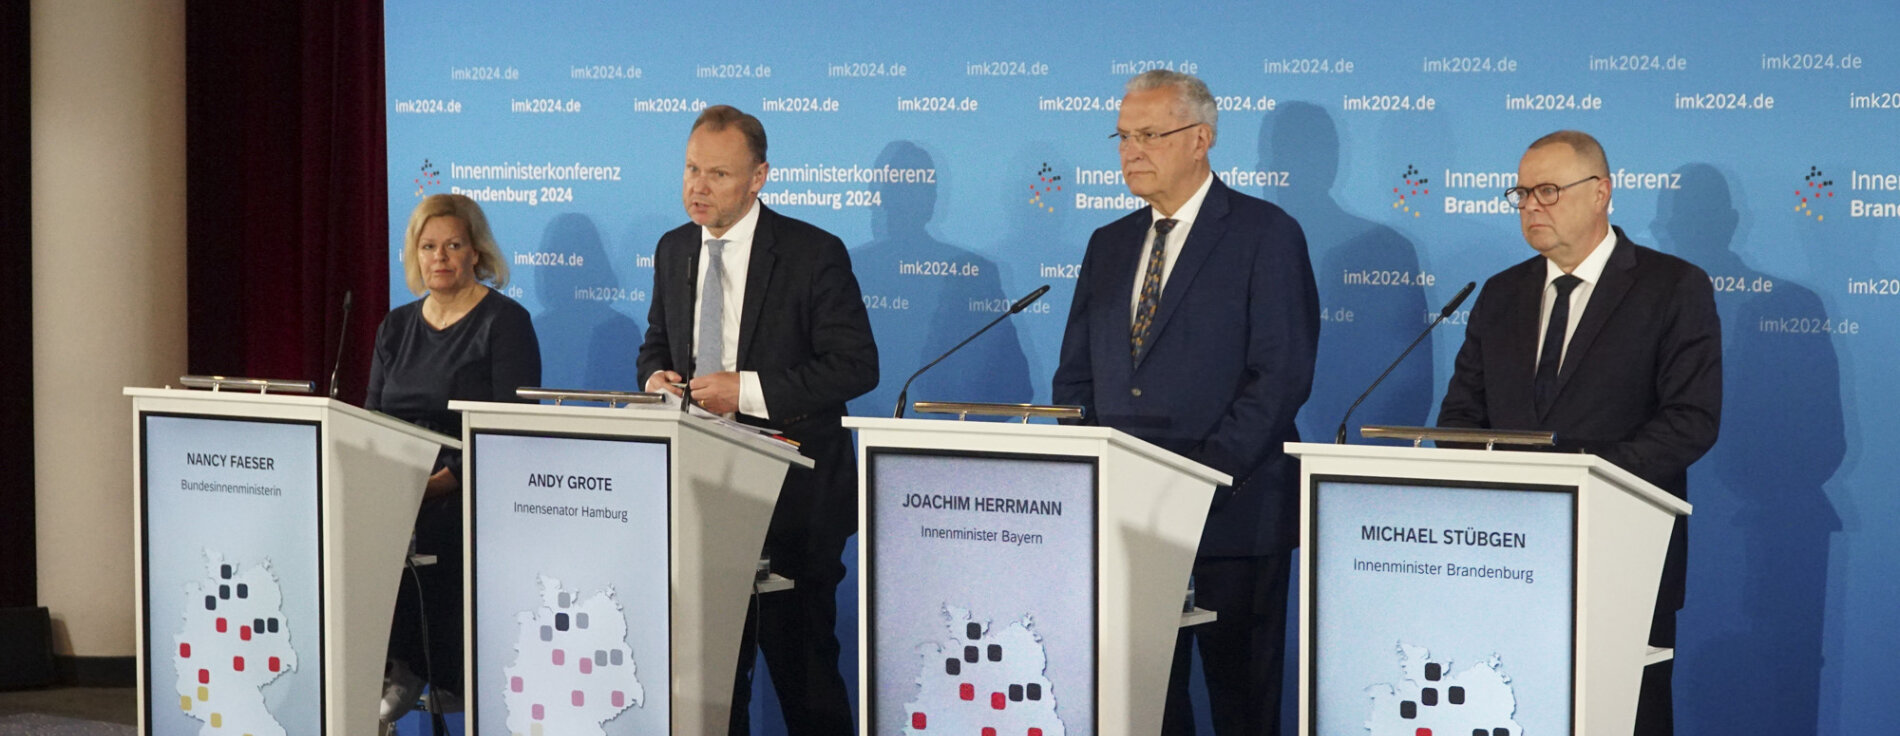 Faeser, Grote, Herrmann und Stübgen bei Pressekonferenz